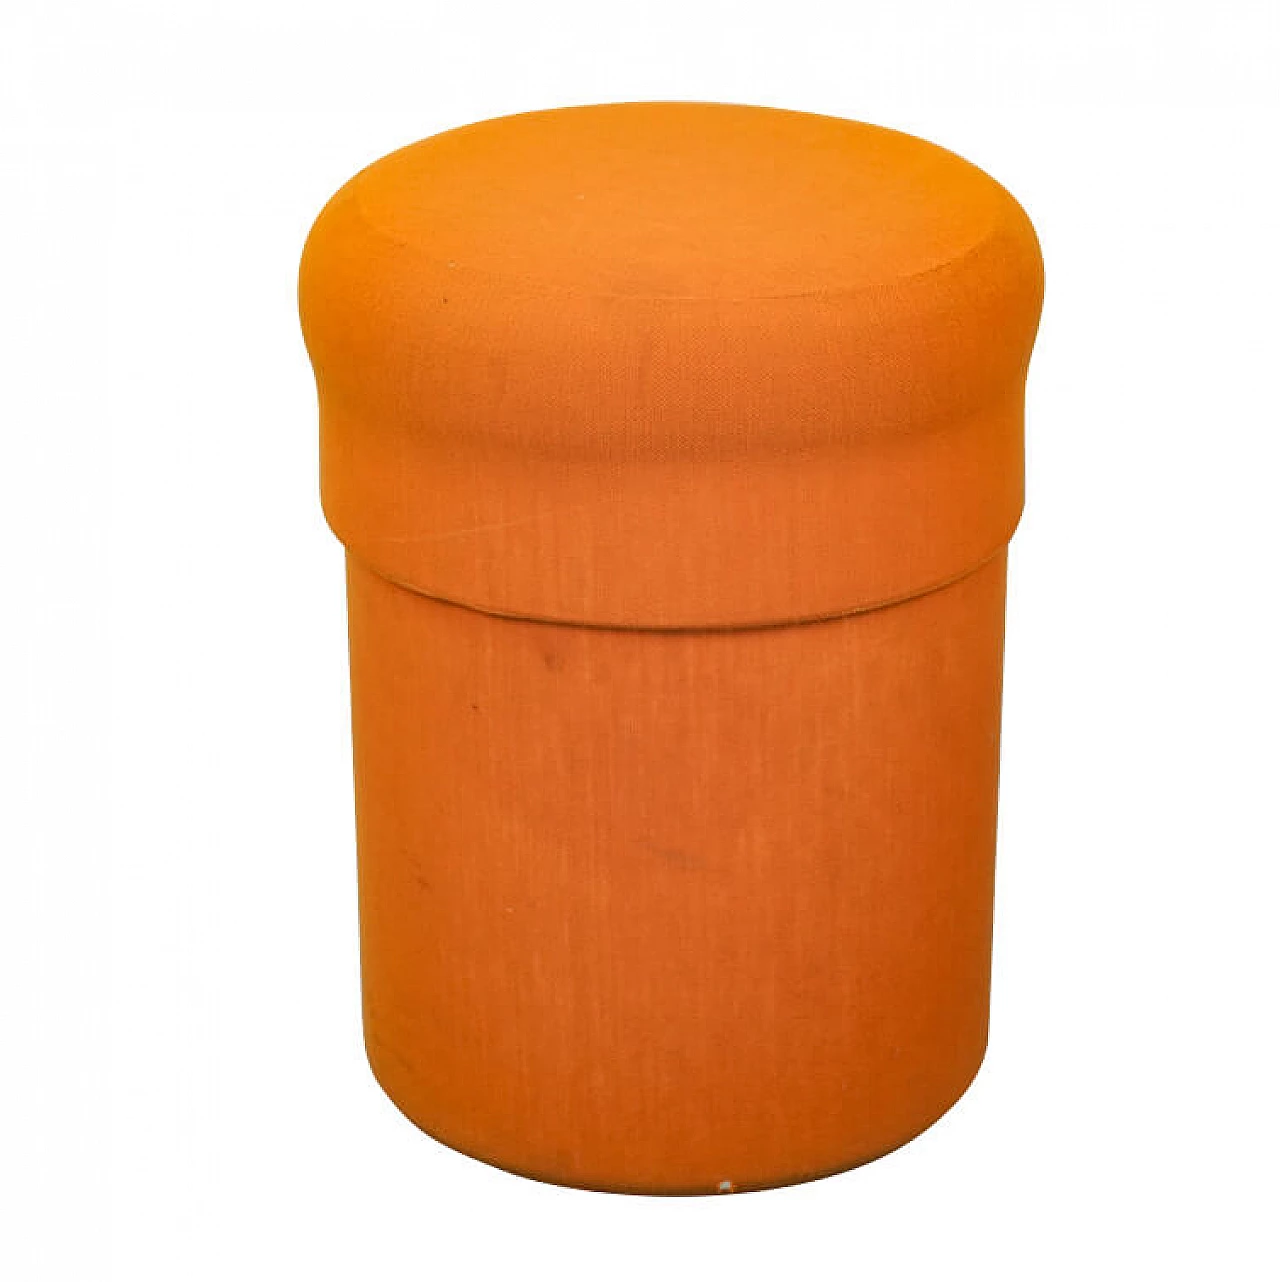 Pouf portabottiglie arancione, anni '70 1130159